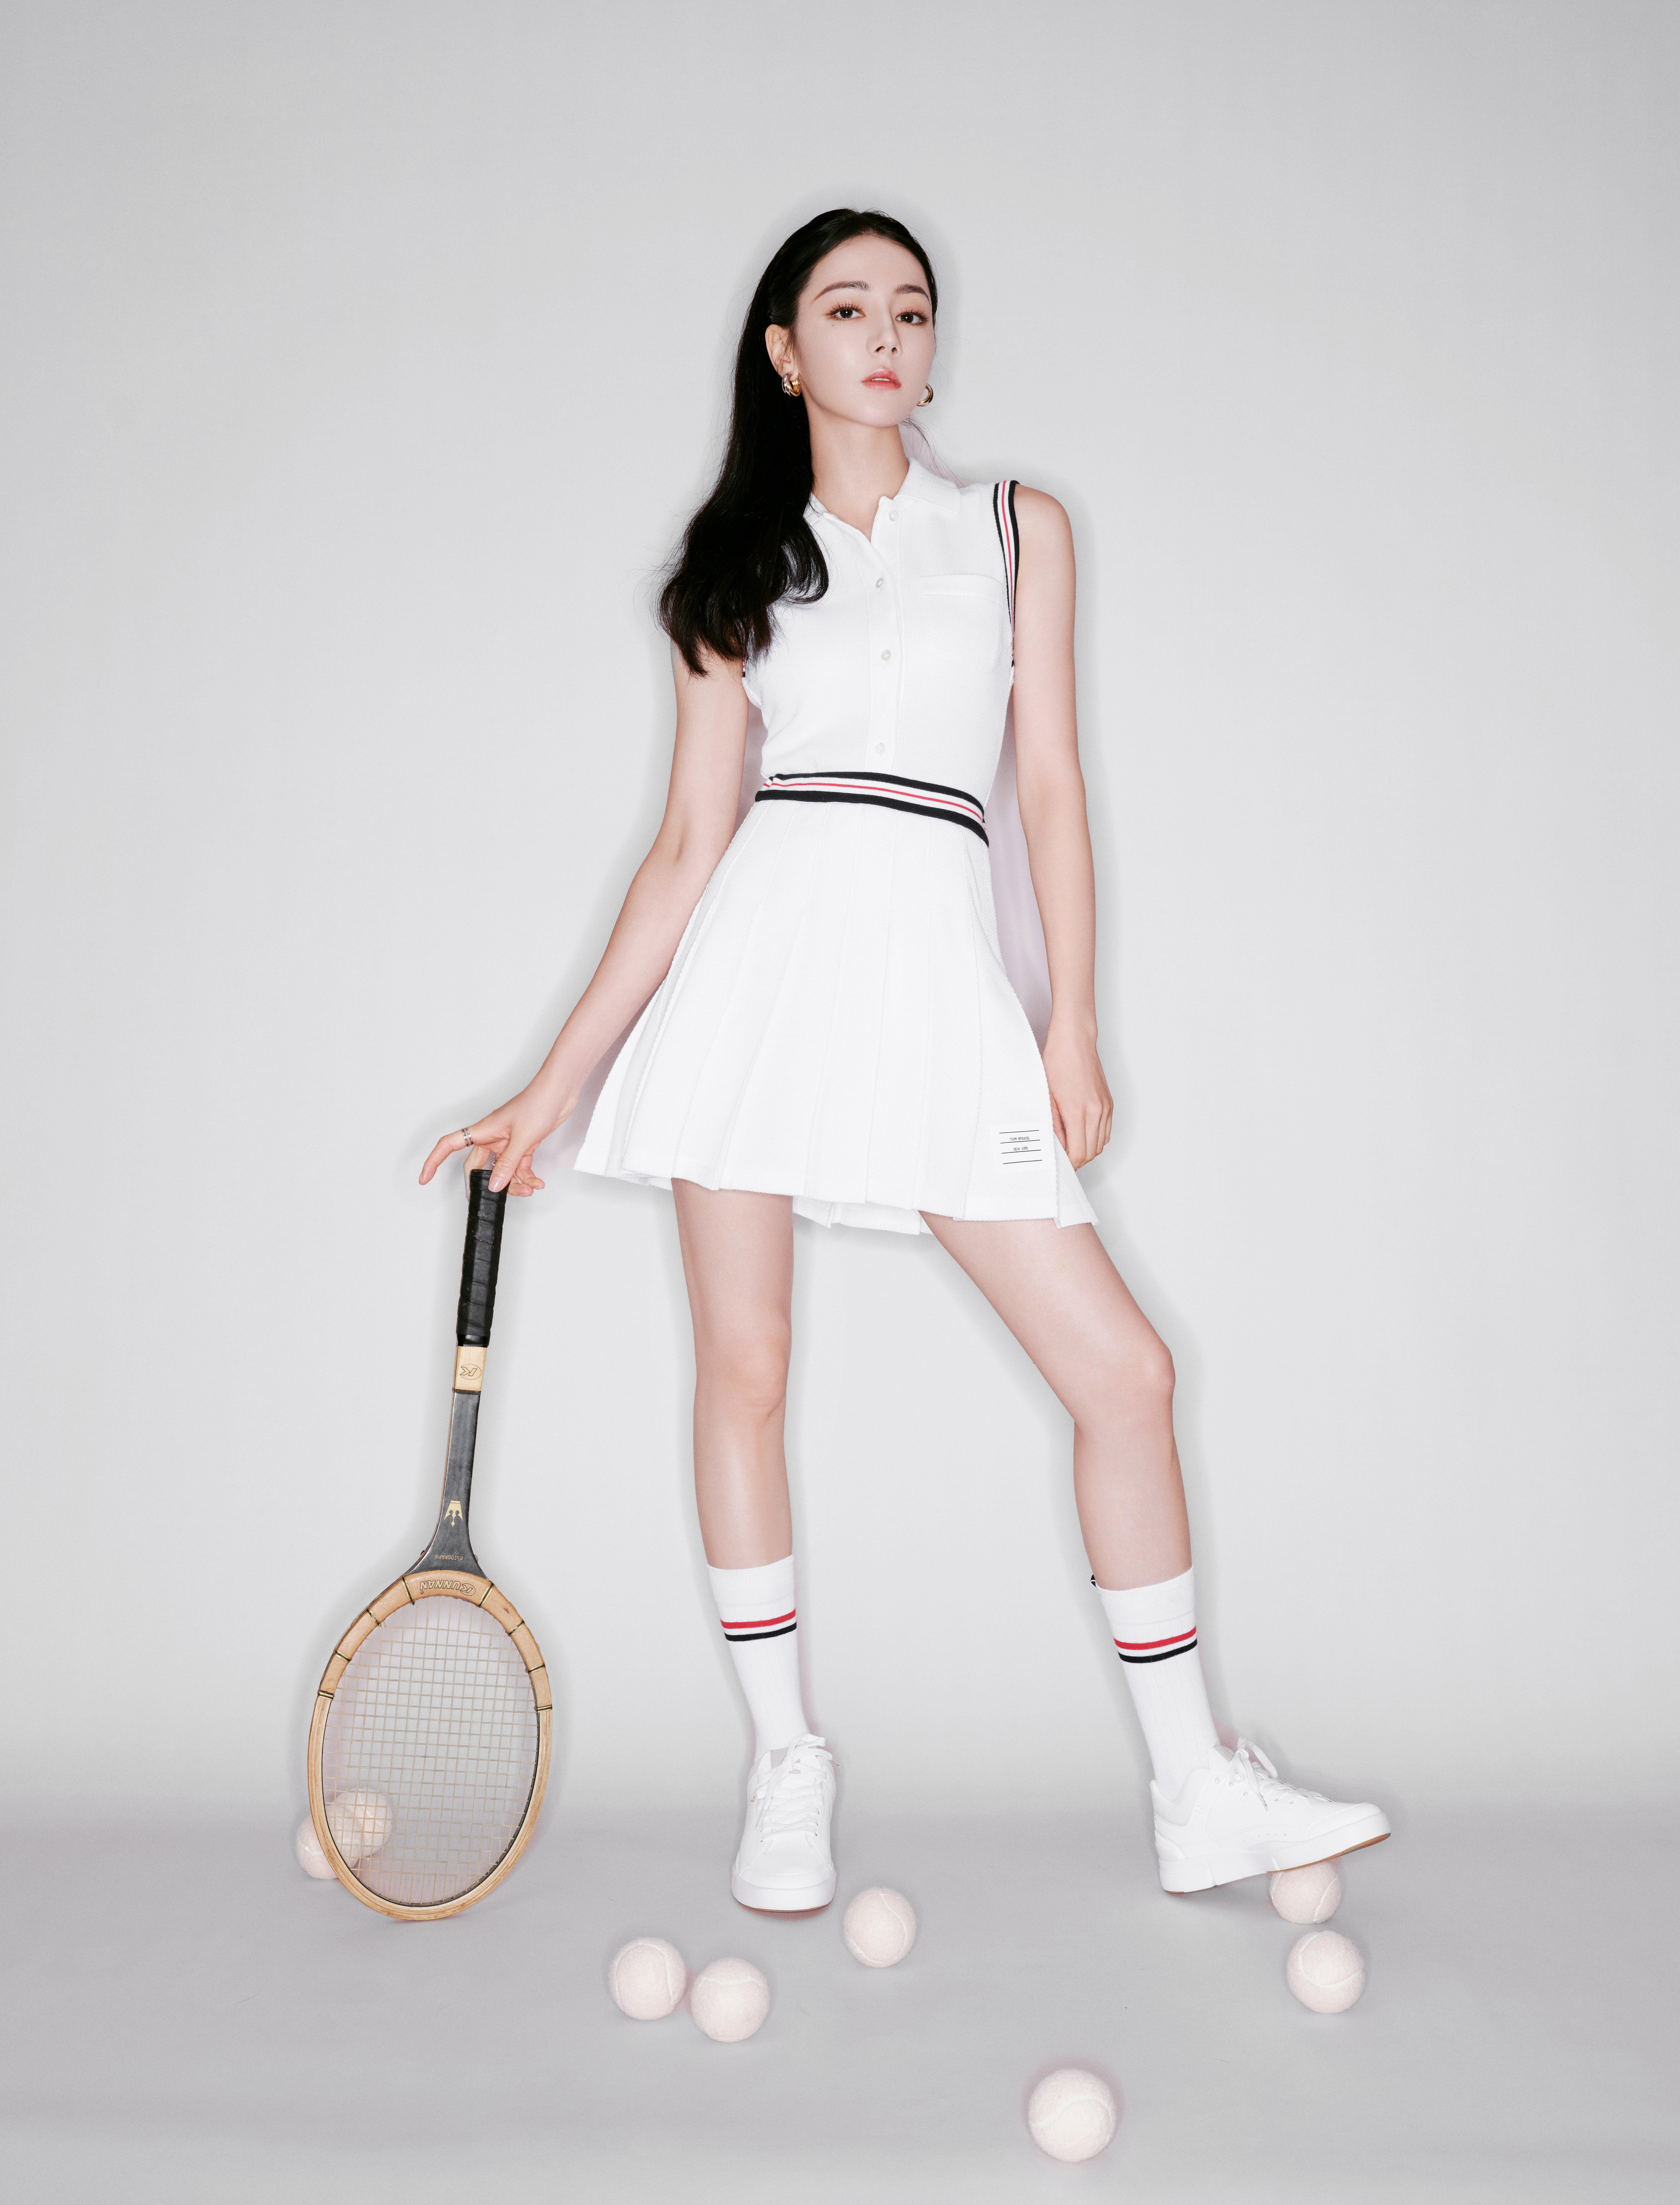 迪丽热巴网球少女造型甜酷满分 活力生风张扬动感,1 (9)